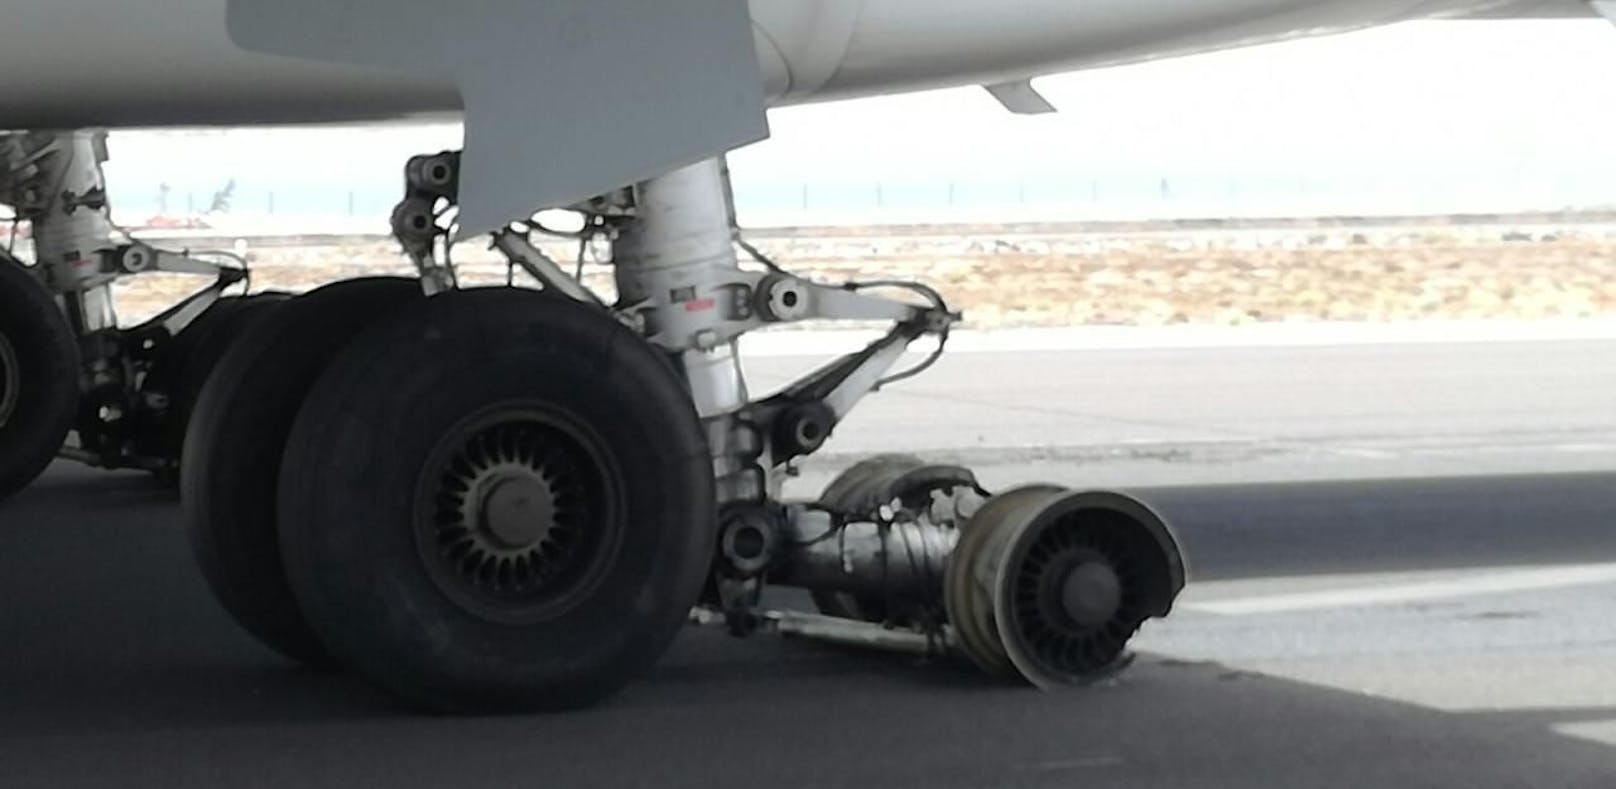 Flugzeug-Reifen explodierten bei Landung